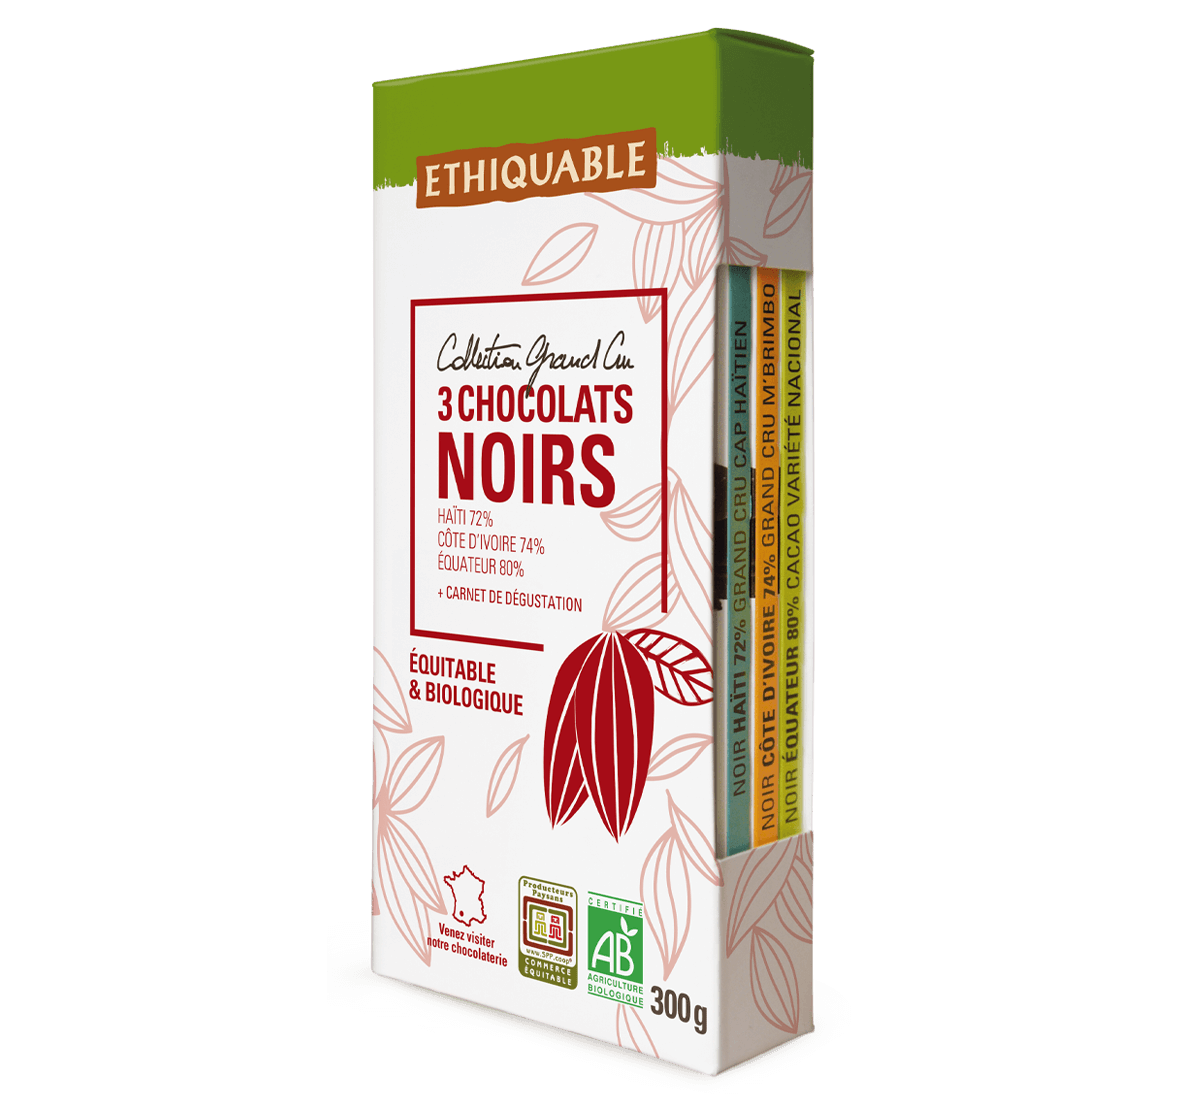 Ethiquable - Collection coffret 3 tablettes chocolat noir bio grand cru issus du commerce équitable